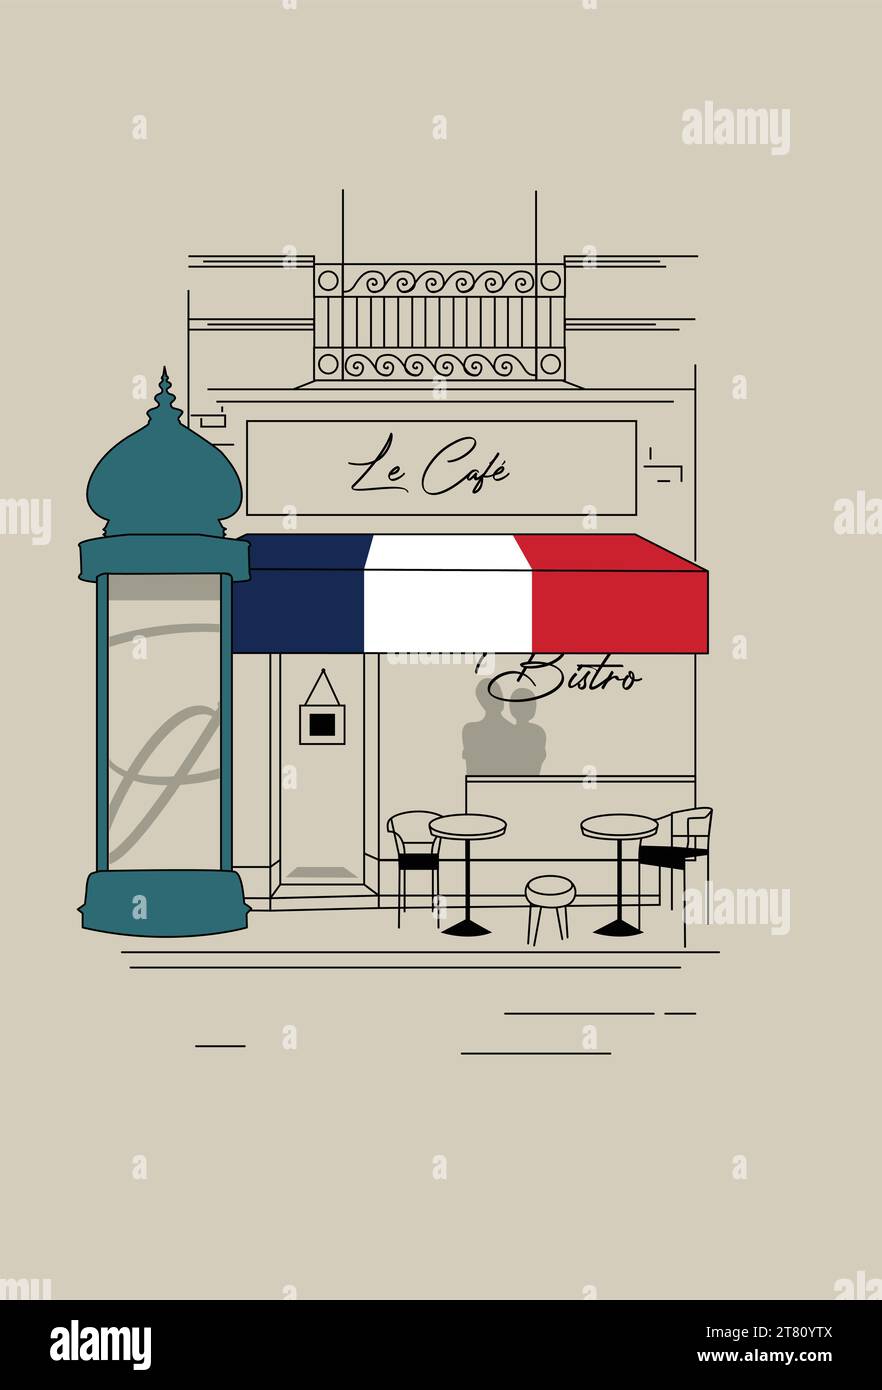 Le Café, Bistro, Paris, France, Building, Architecture With Morris Column Scene Stock Vector